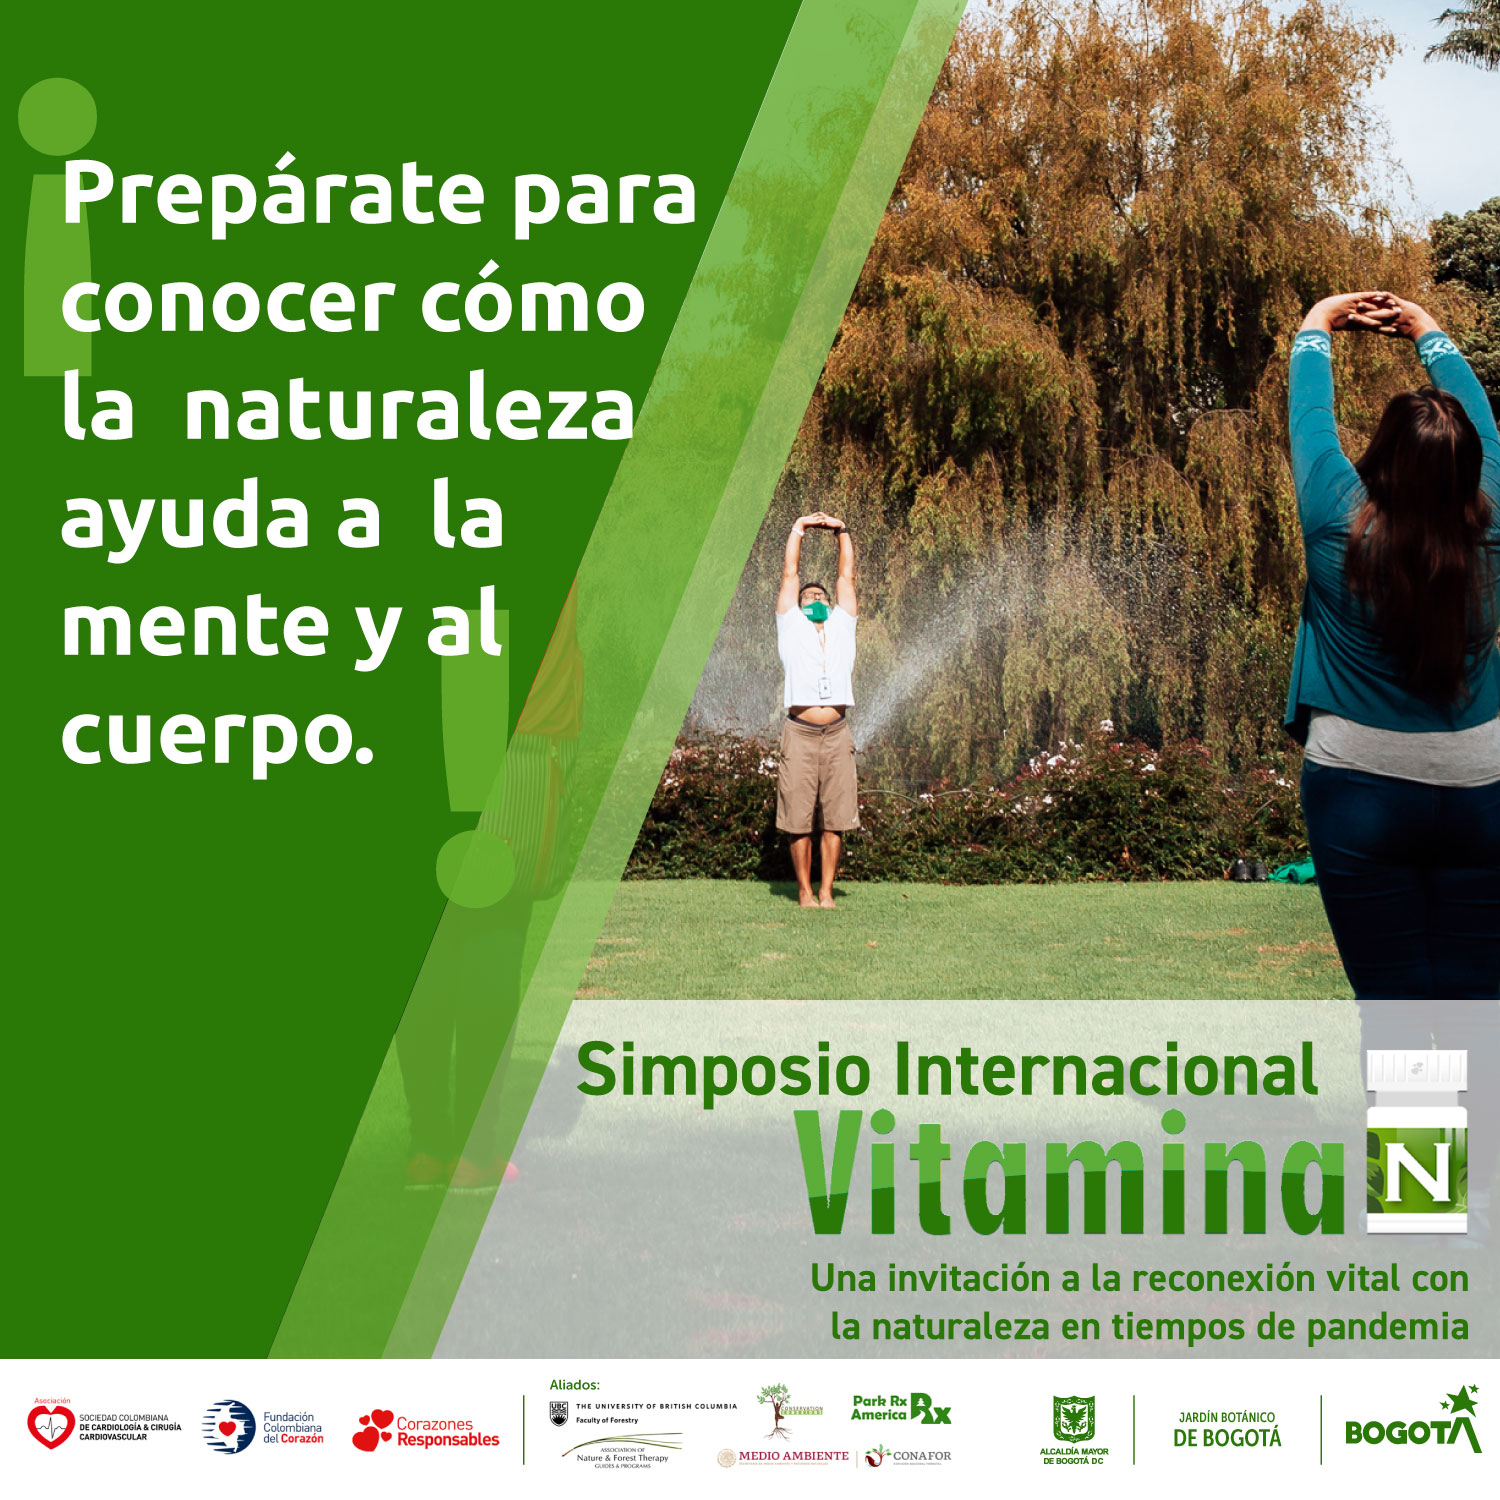 Prepárate para conocer cómo la naturaleza puede ayudar a la mente y el cuerpo el 29, 30 de abril y primero de mayo de 2021, a través de los canales Facebook y Youtube del Jardín Botánico de Bogotá